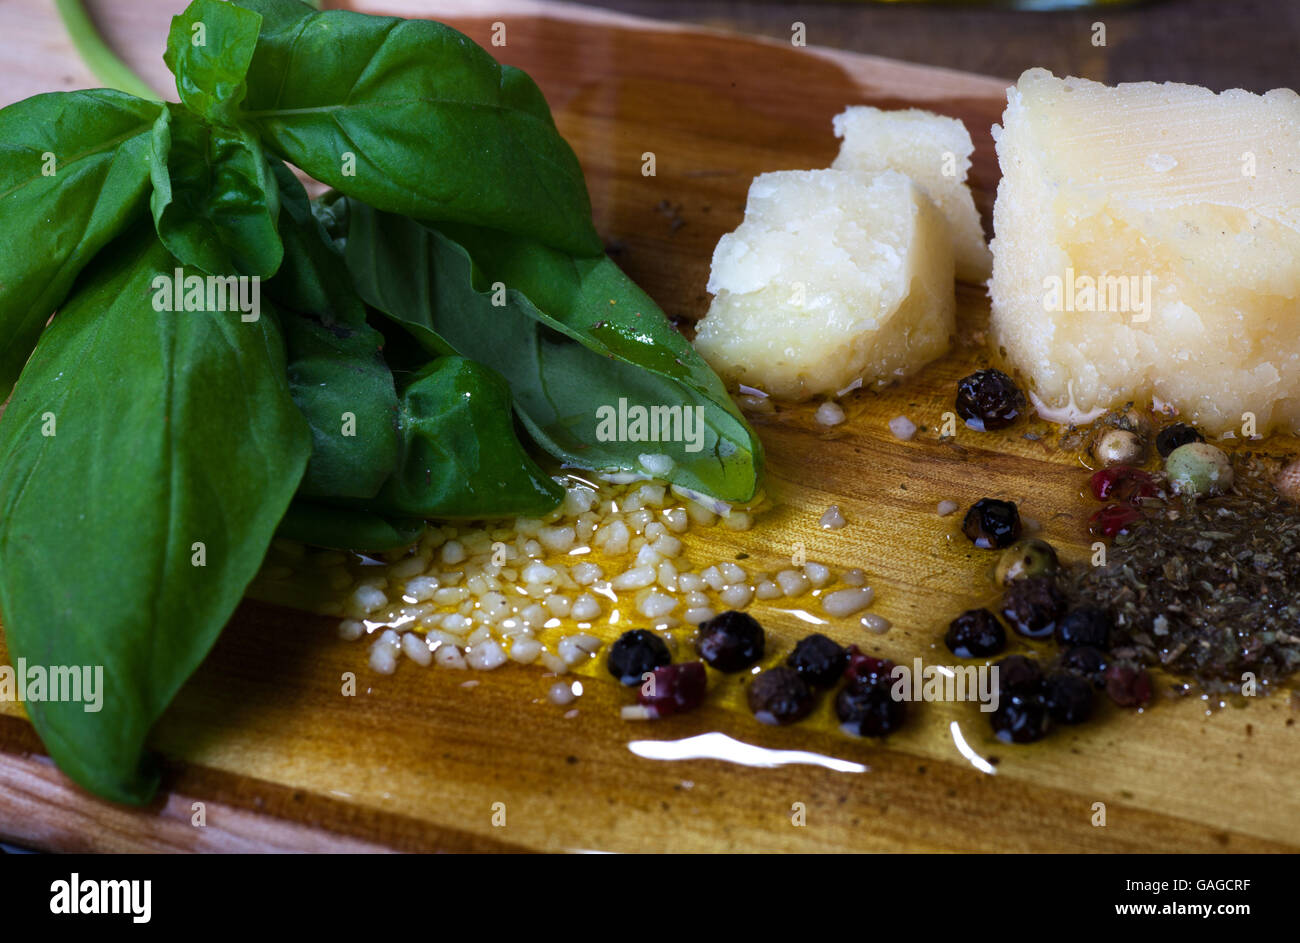 Italian apetiser food on wooden board Stock Photo